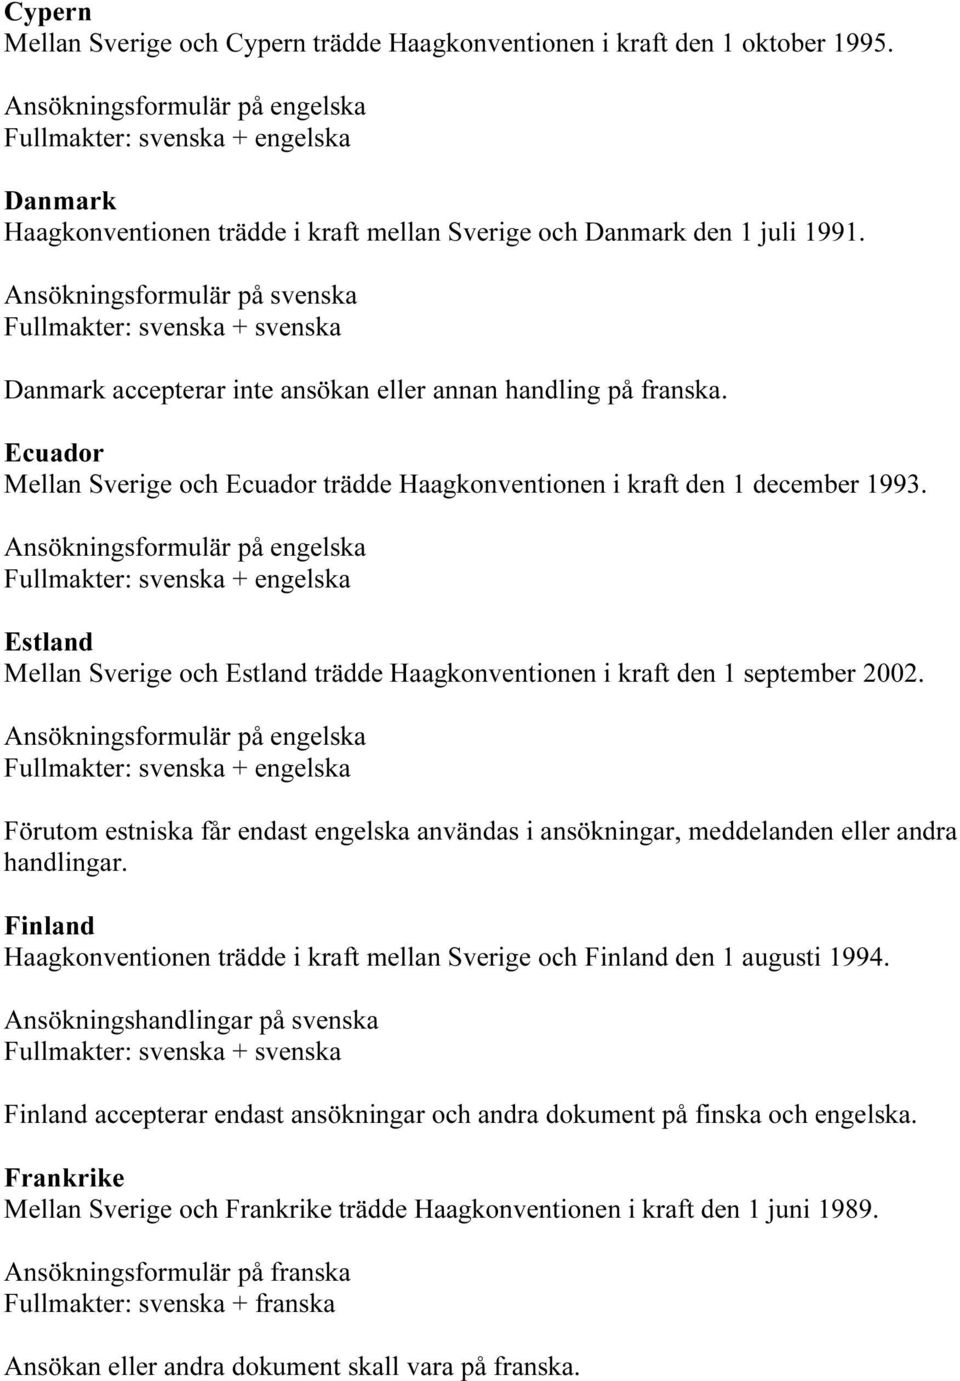 Ecuador Mellan Sverige och Ecuador trädde Haagkonventionen i kraft den 1 december 1993. Estland Mellan Sverige och Estland trädde Haagkonventionen i kraft den 1 september 2002.